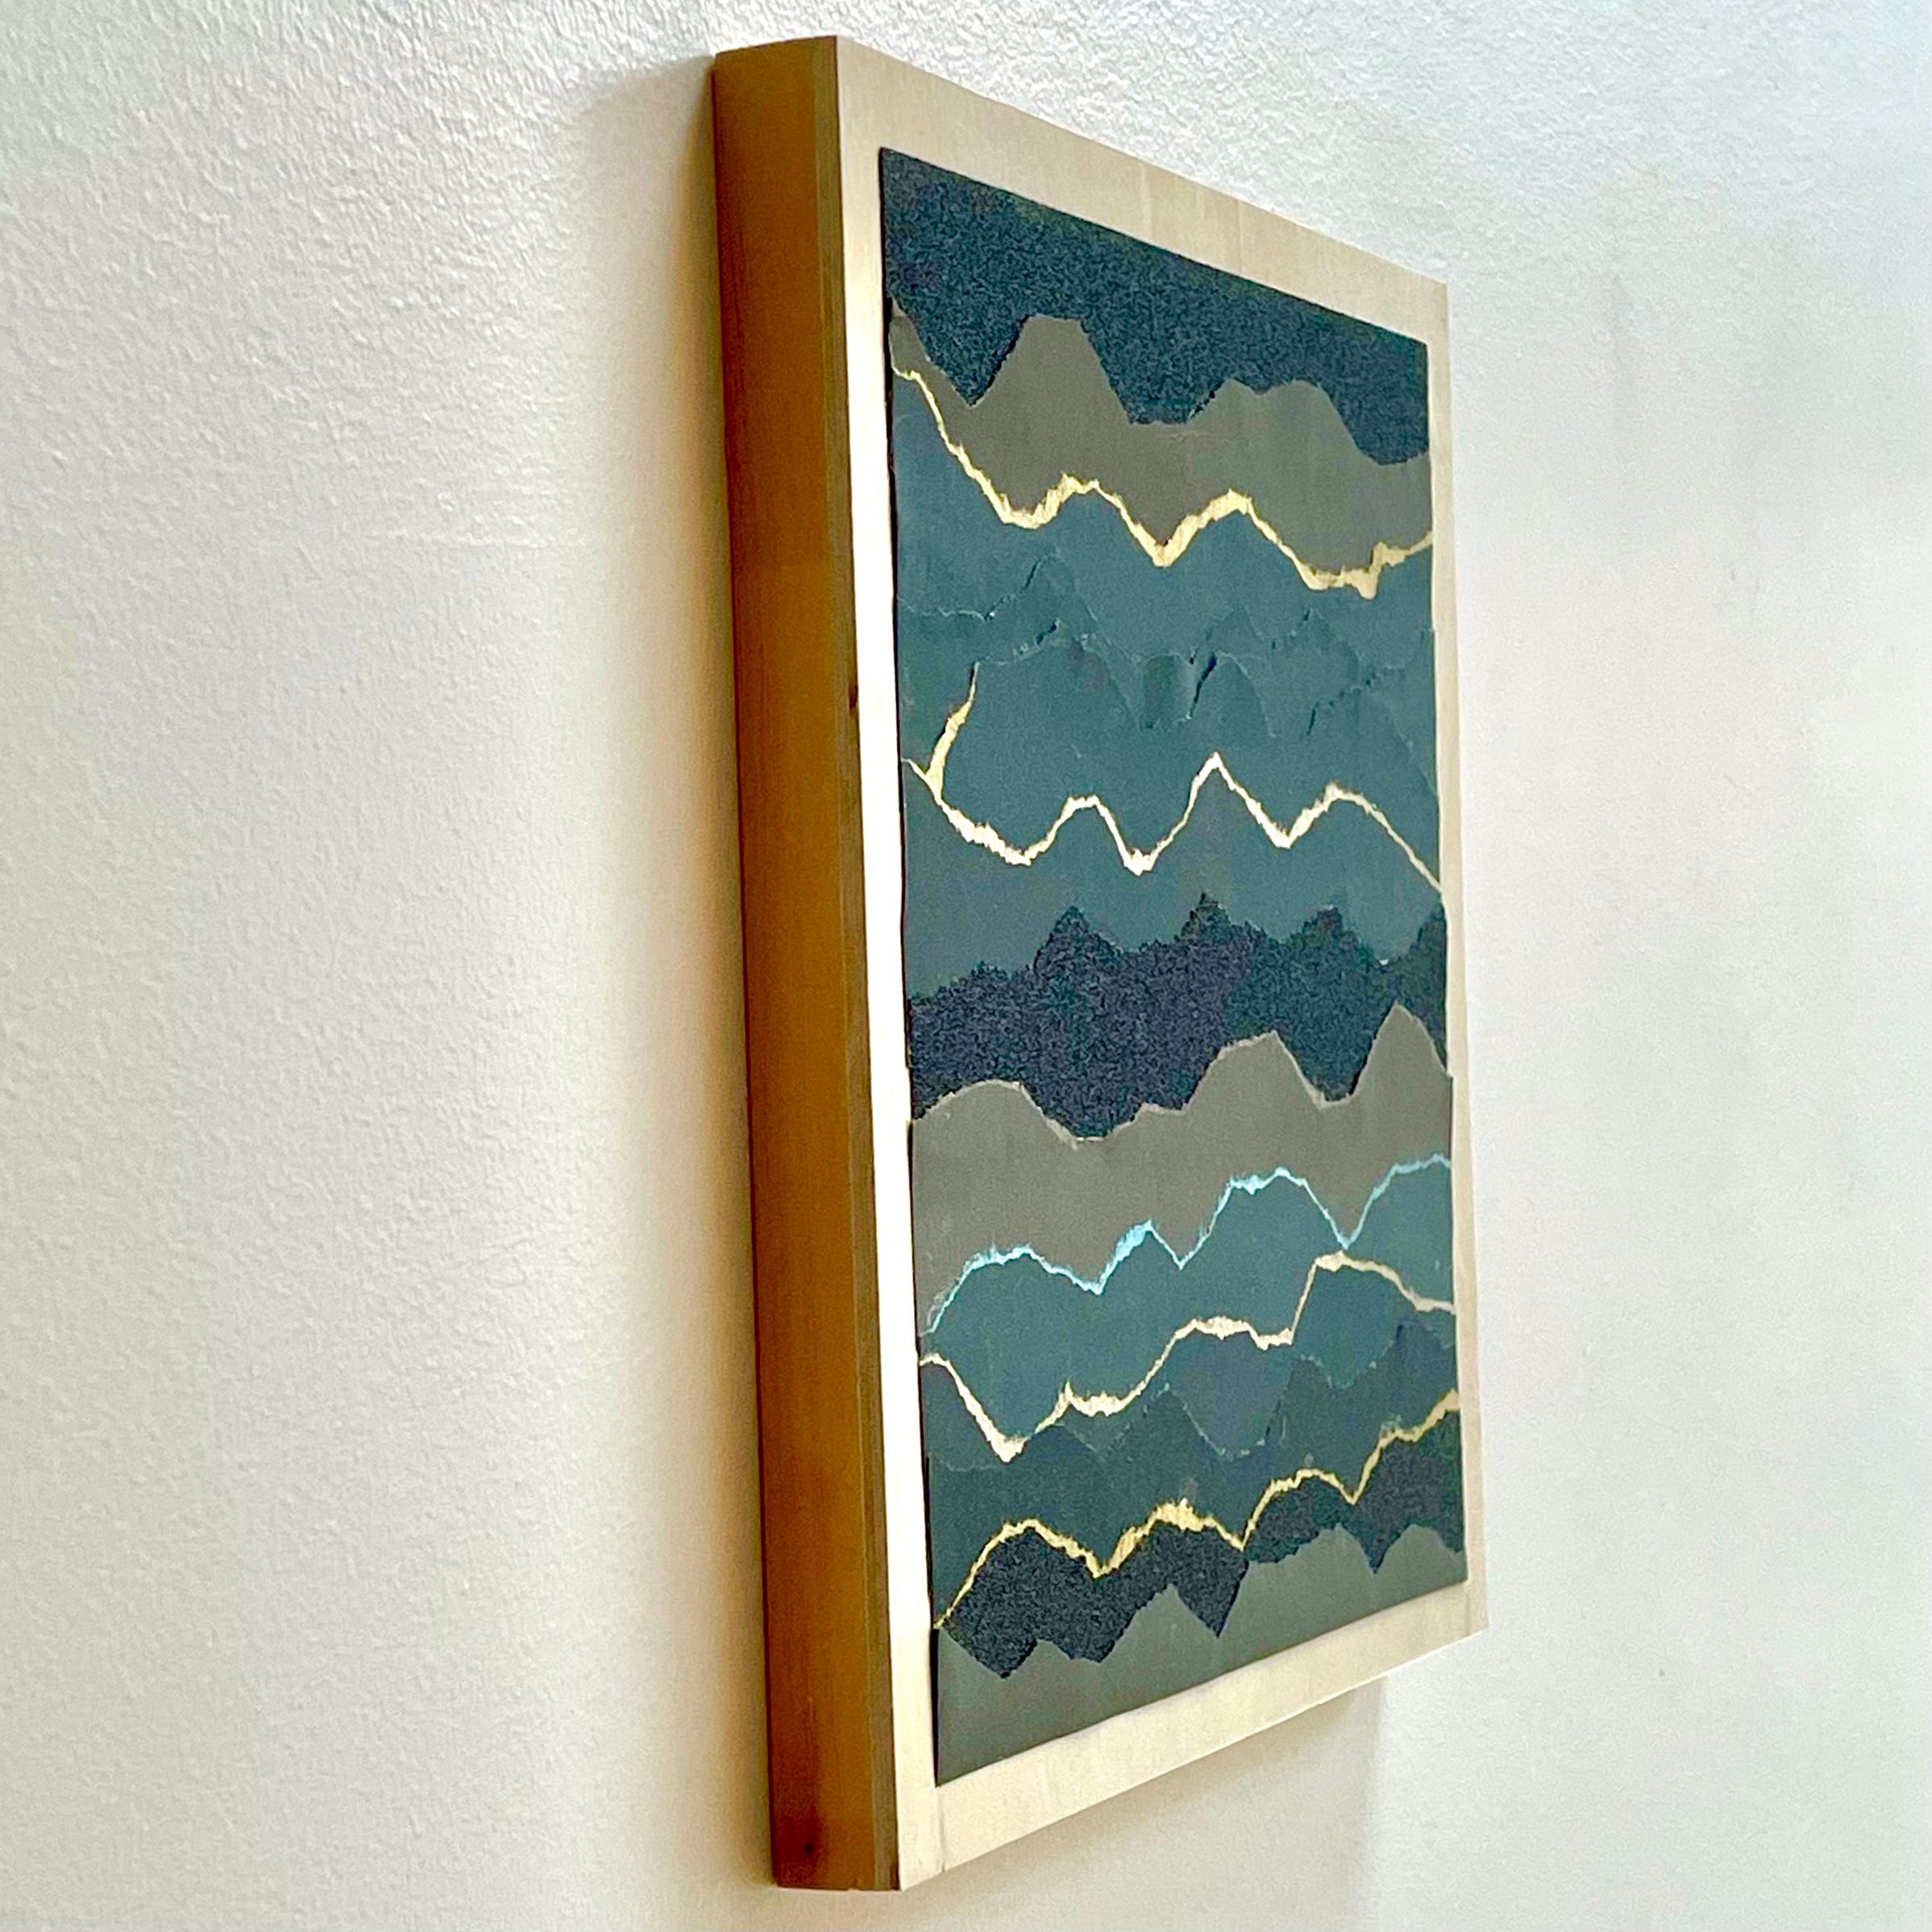 Fluctus 2  - Blau grau schwarz abstrakte Meereslandschaft Papier Collage auf Holzbrett – Art von Marie Laforey